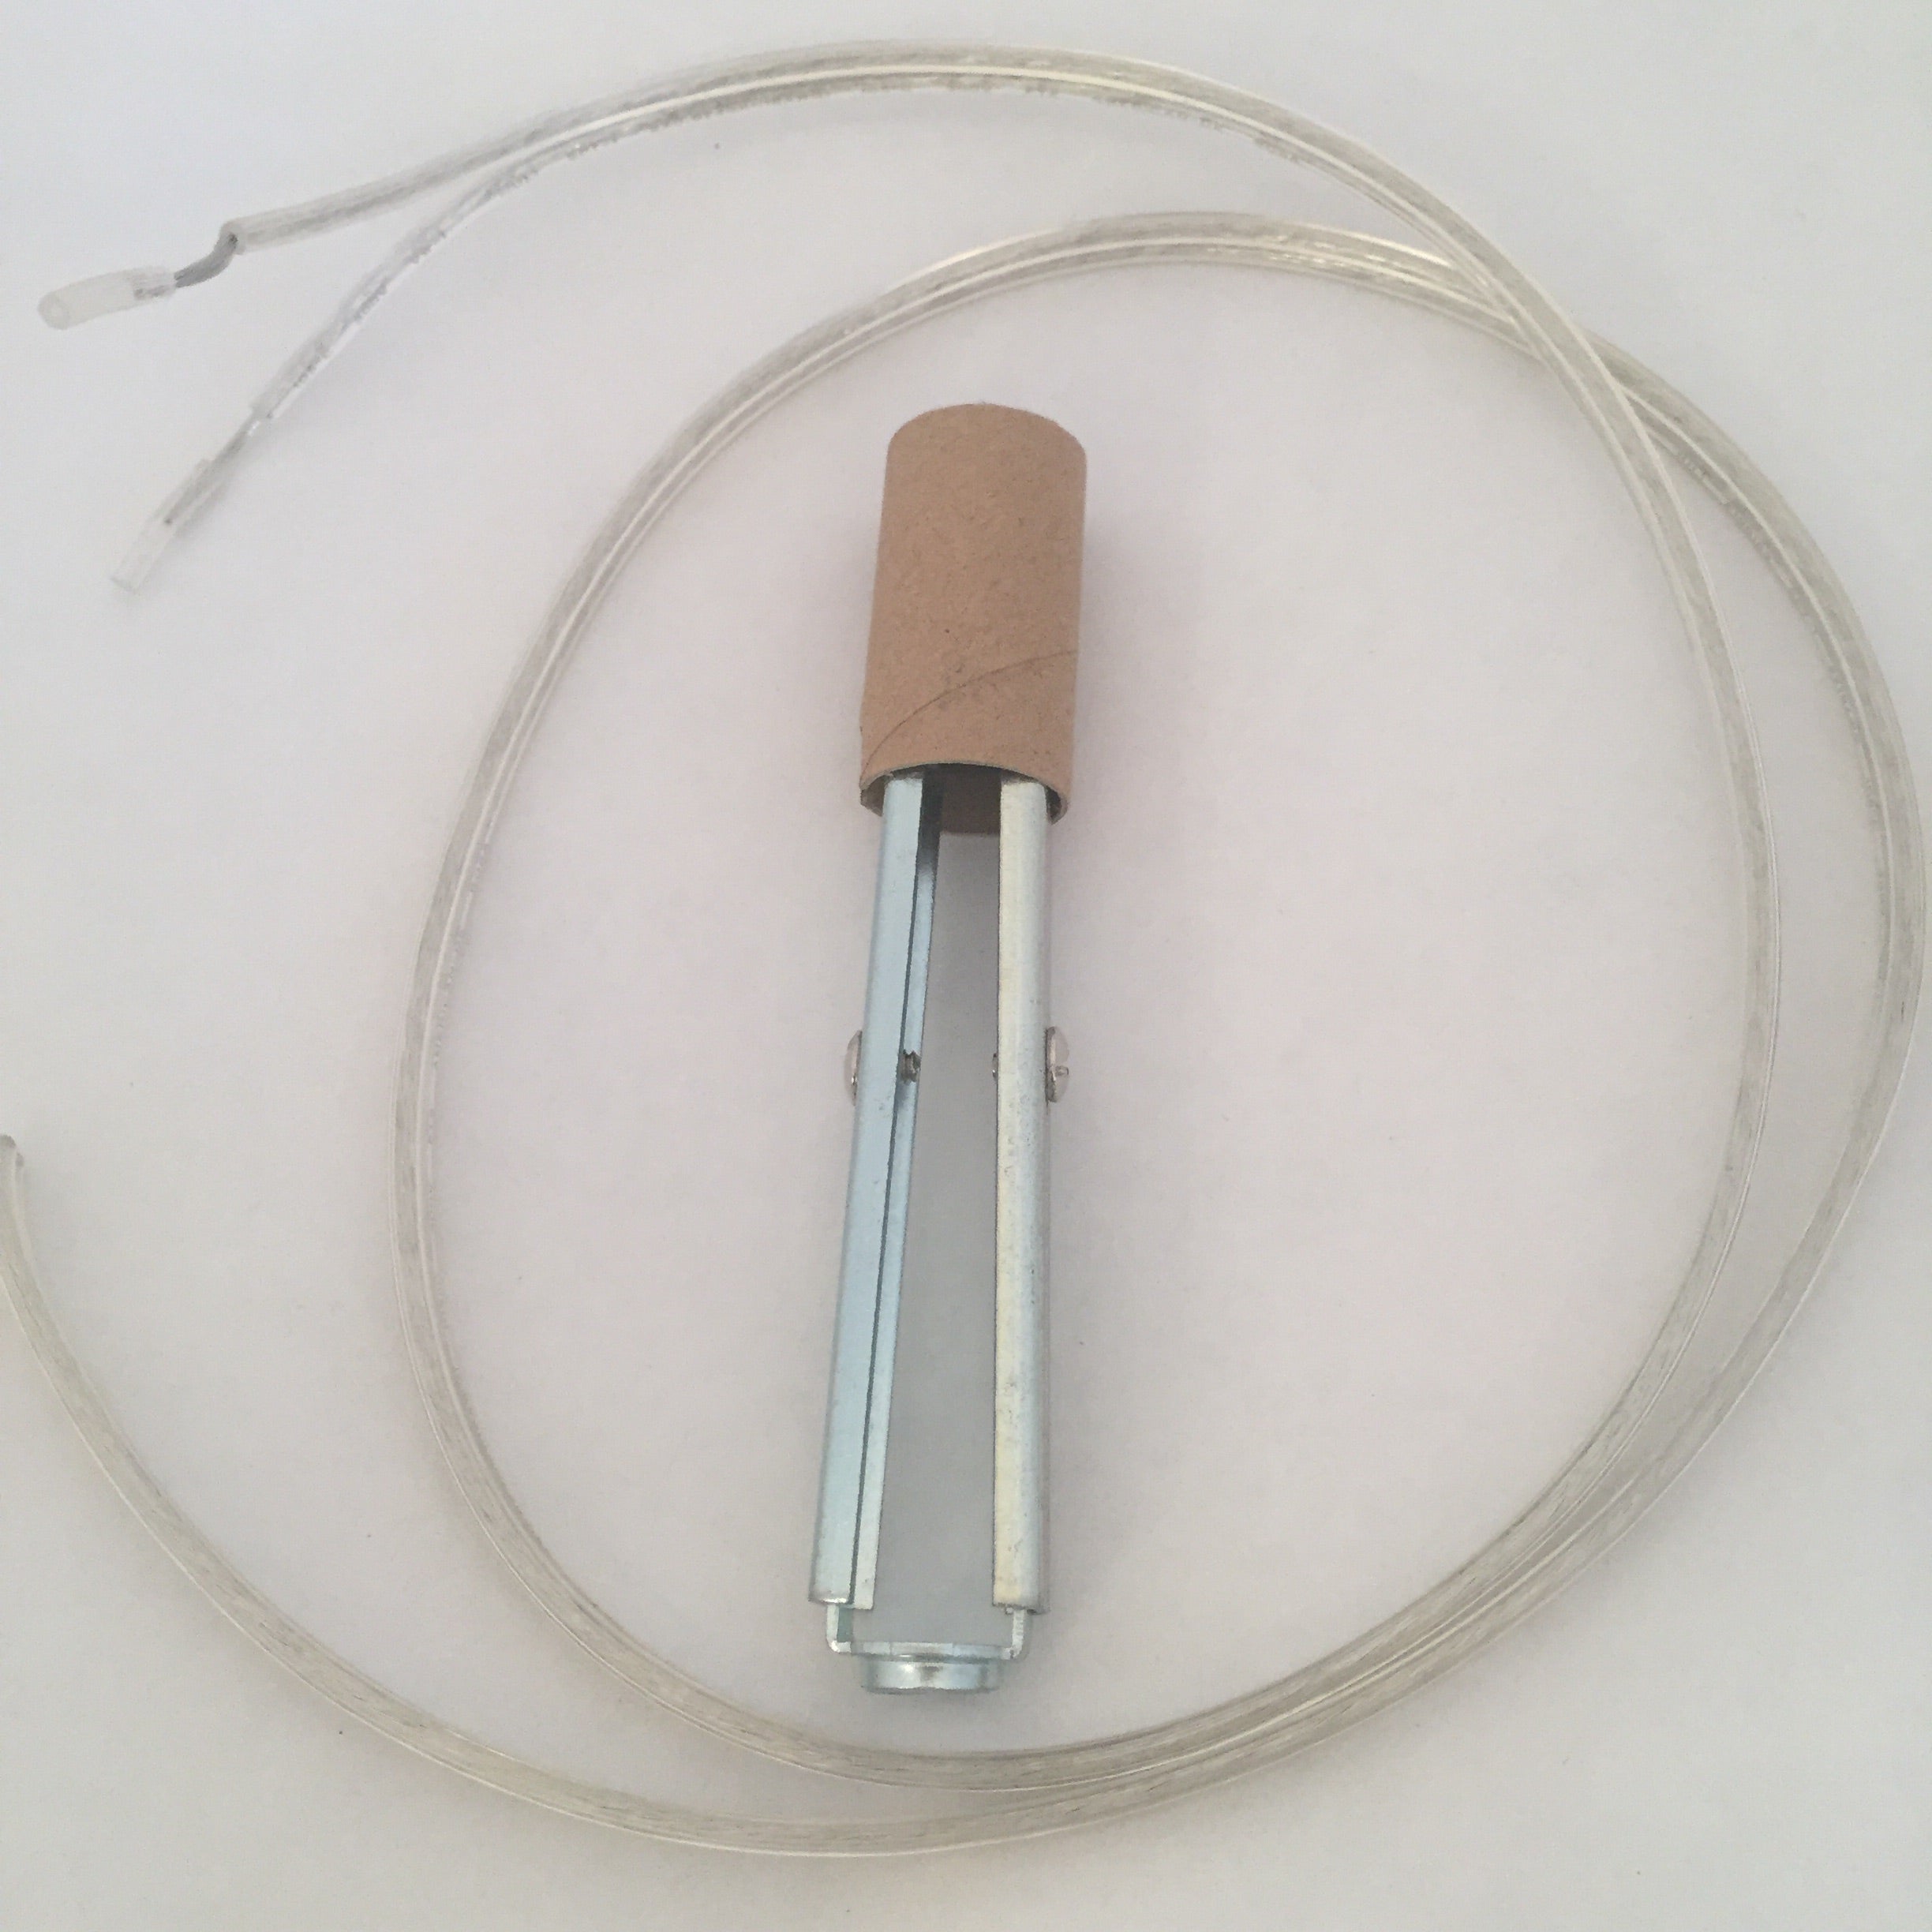 Chandelier Arm Rewire Kit - Clear Wire, 4 3/4 - 6 Socket